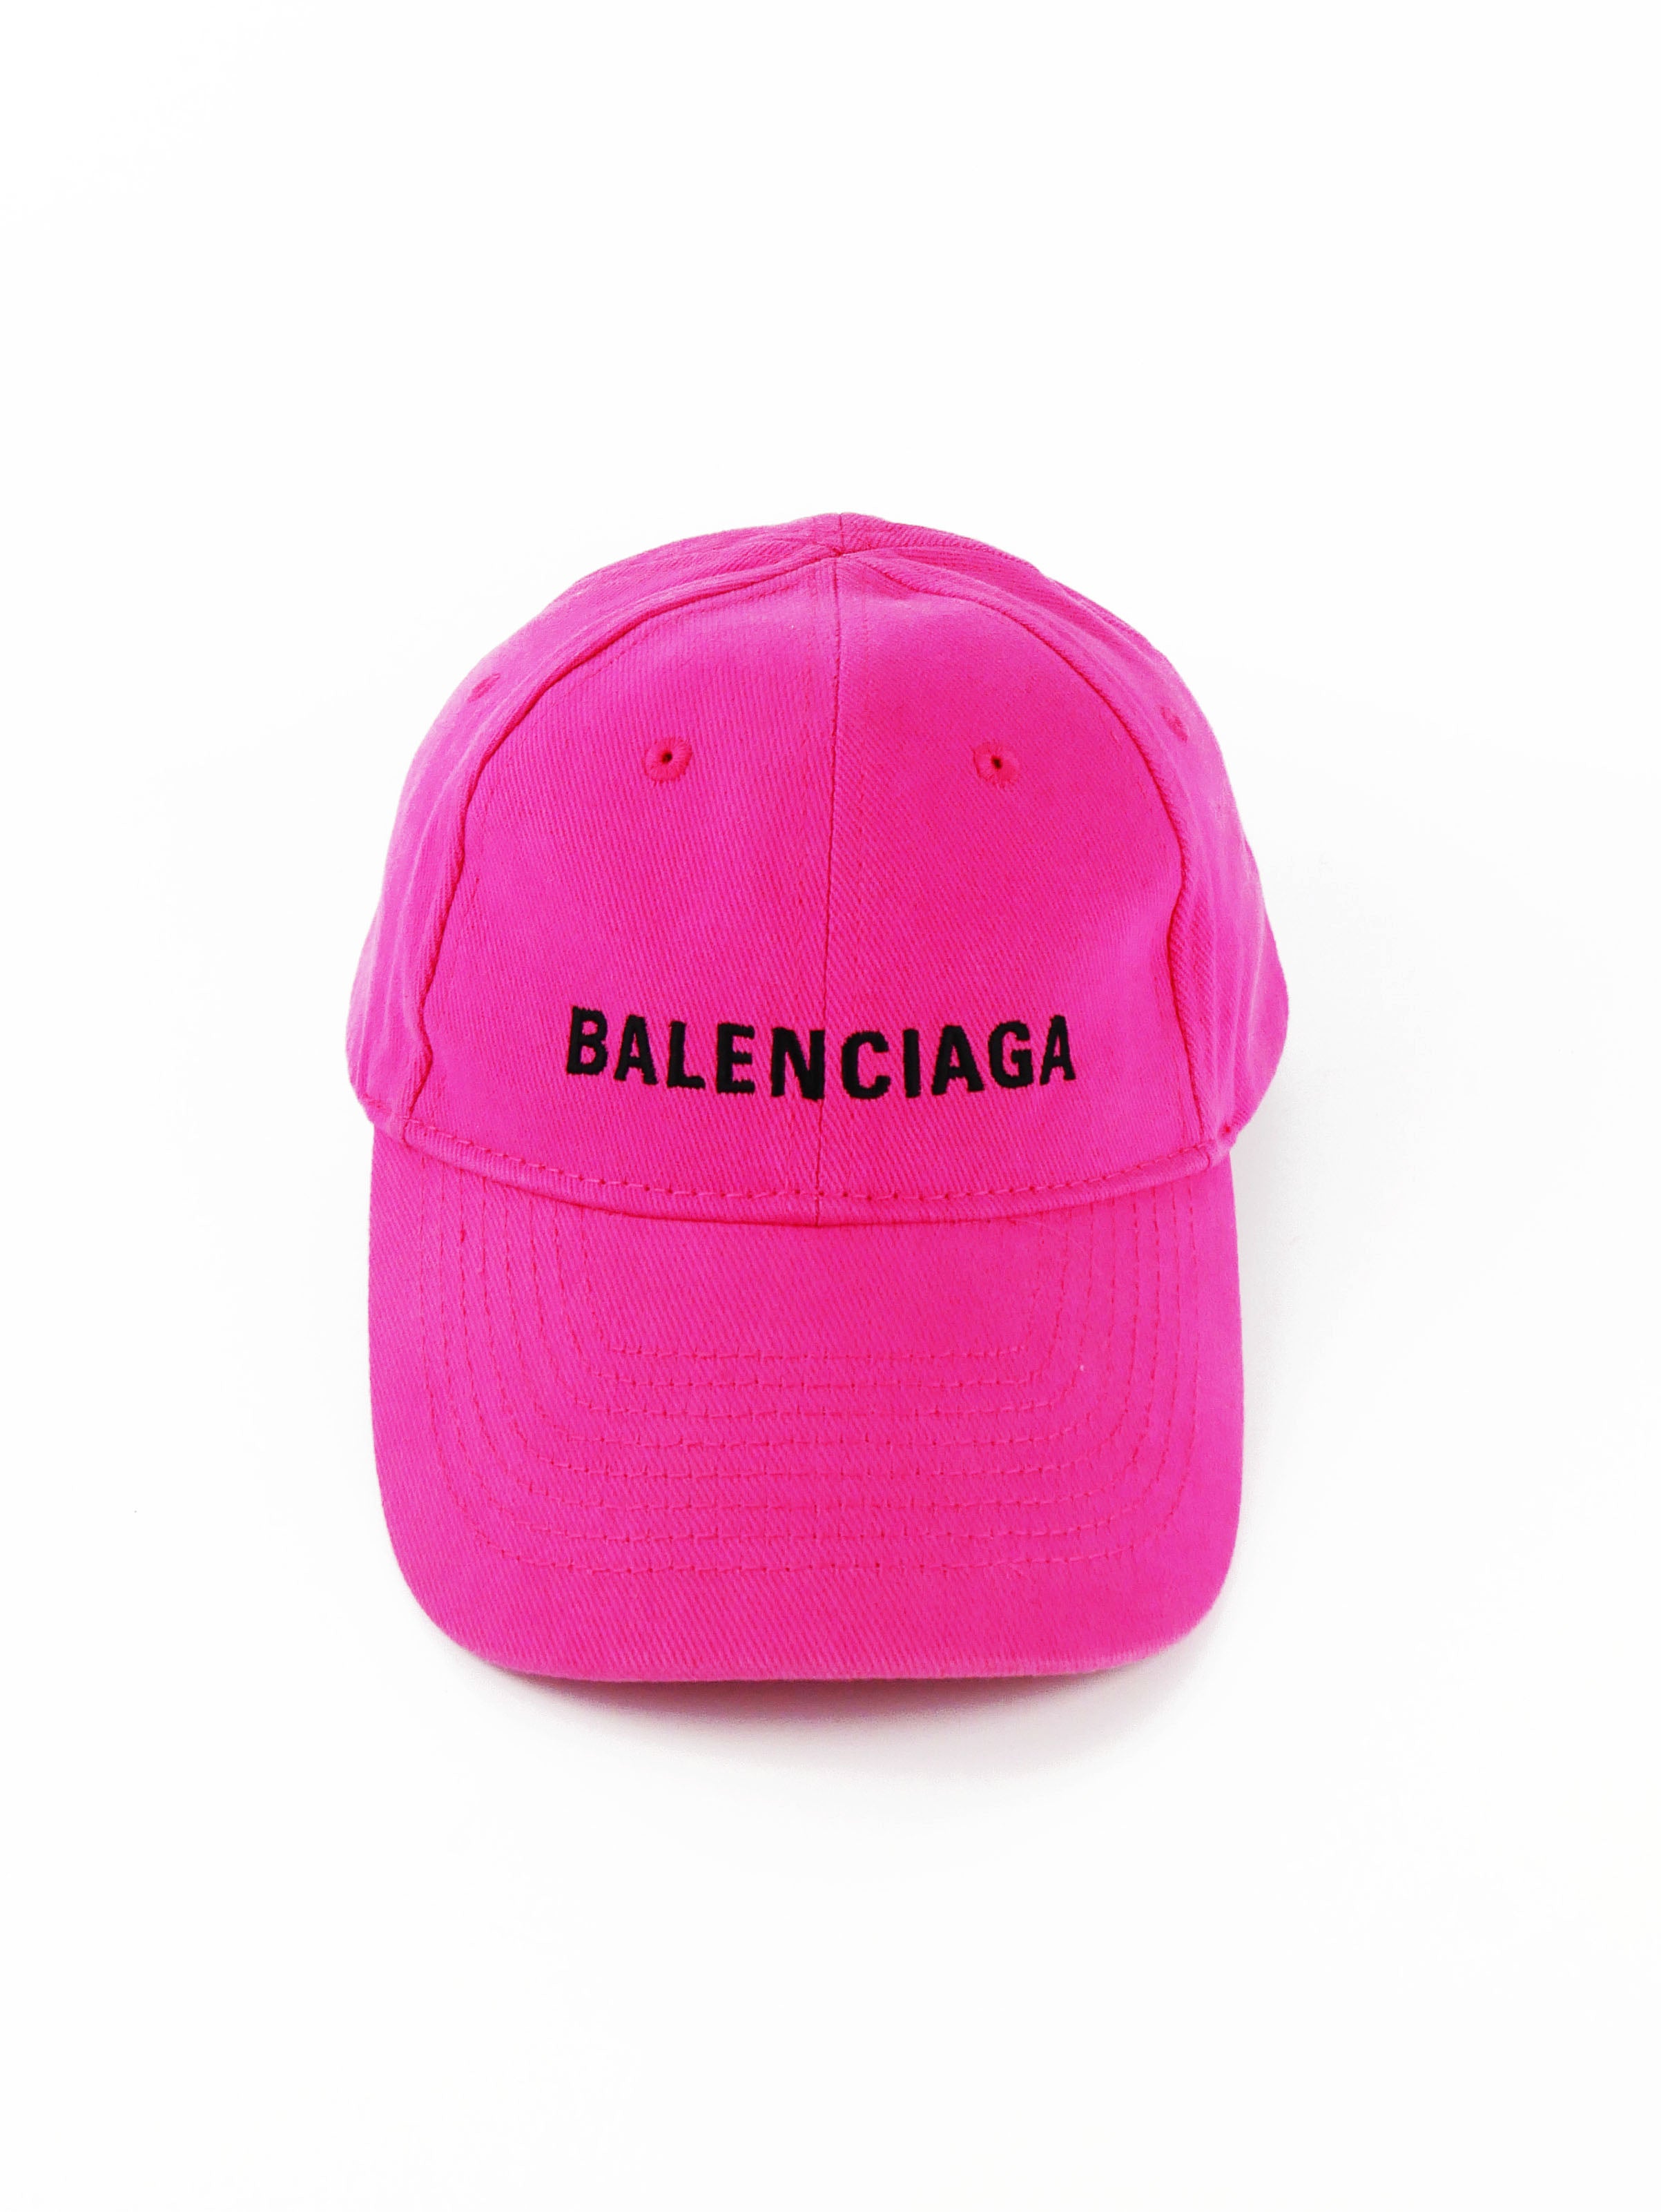 balenciaga-pink-cap-4_5e42cf17-f0bc-4917-875f-d55995b6daad.jpg